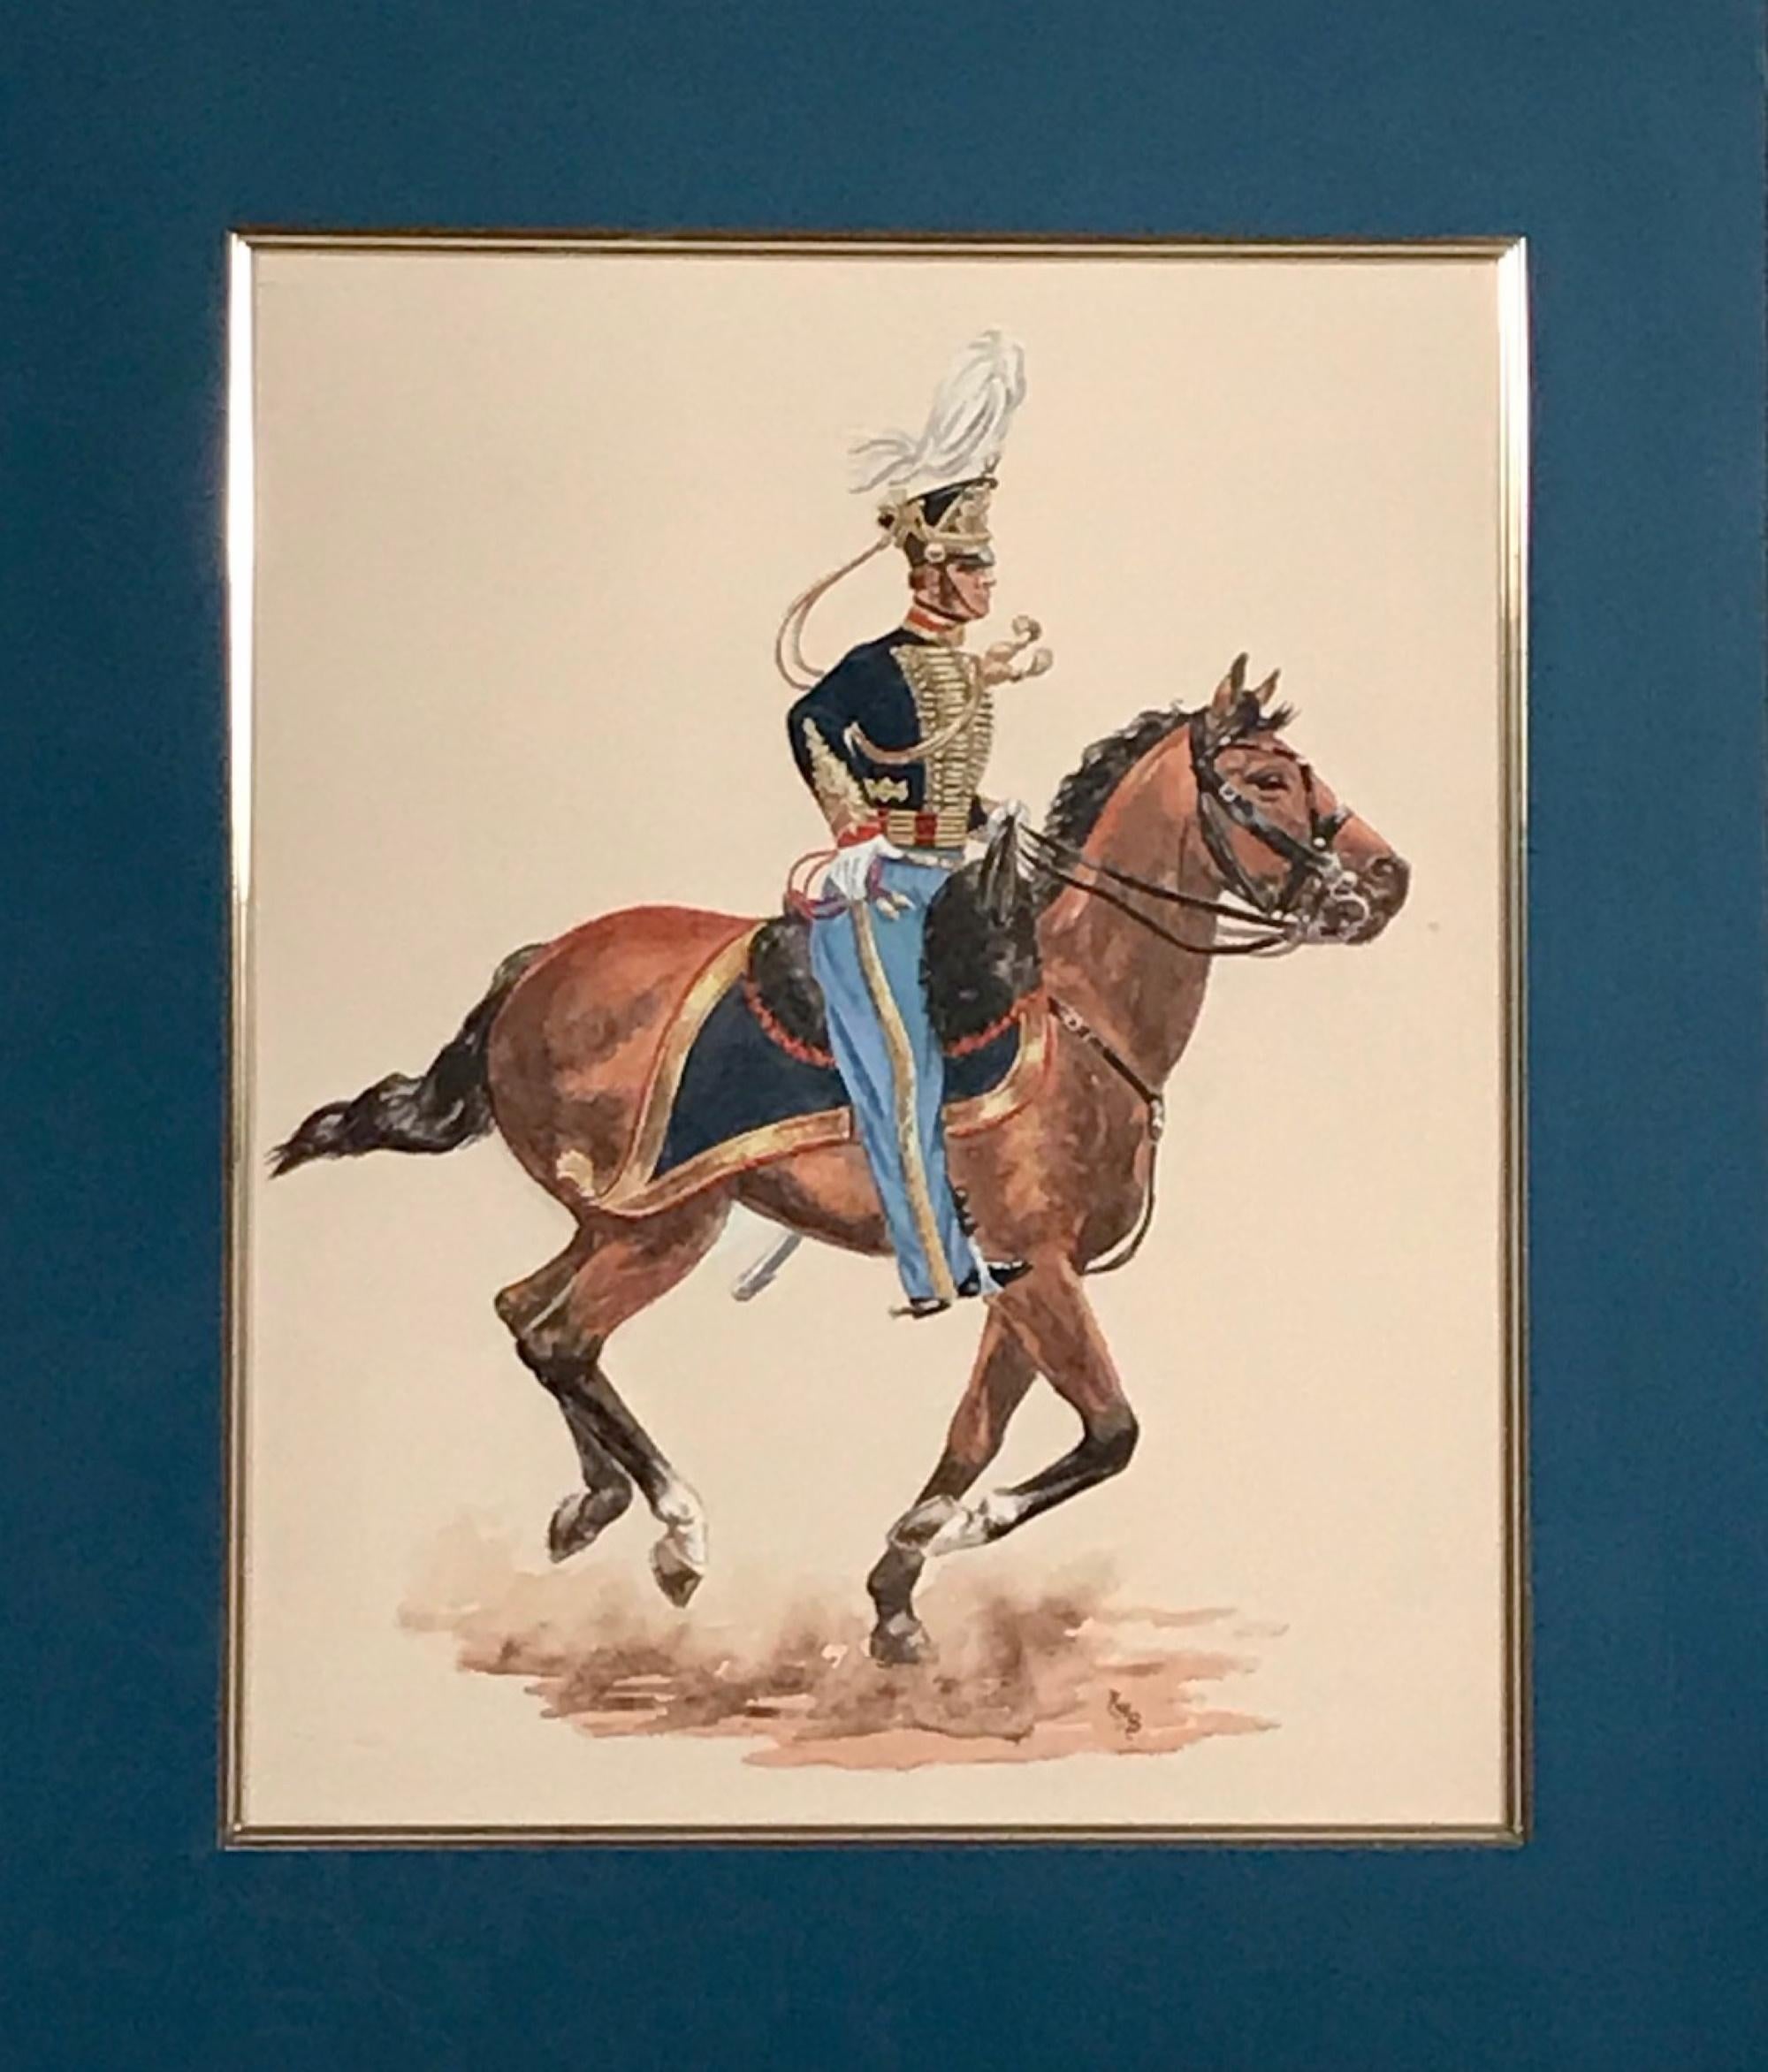 Aquarelle représentant un soldat de cavalerie sur un cheval au galop, monogrammée.

Cette peinture à l'aquarelle est exécutée avec une technique magistrale. Les détails les plus fins et les couleurs vives font de cette œuvre d'art un trésor.